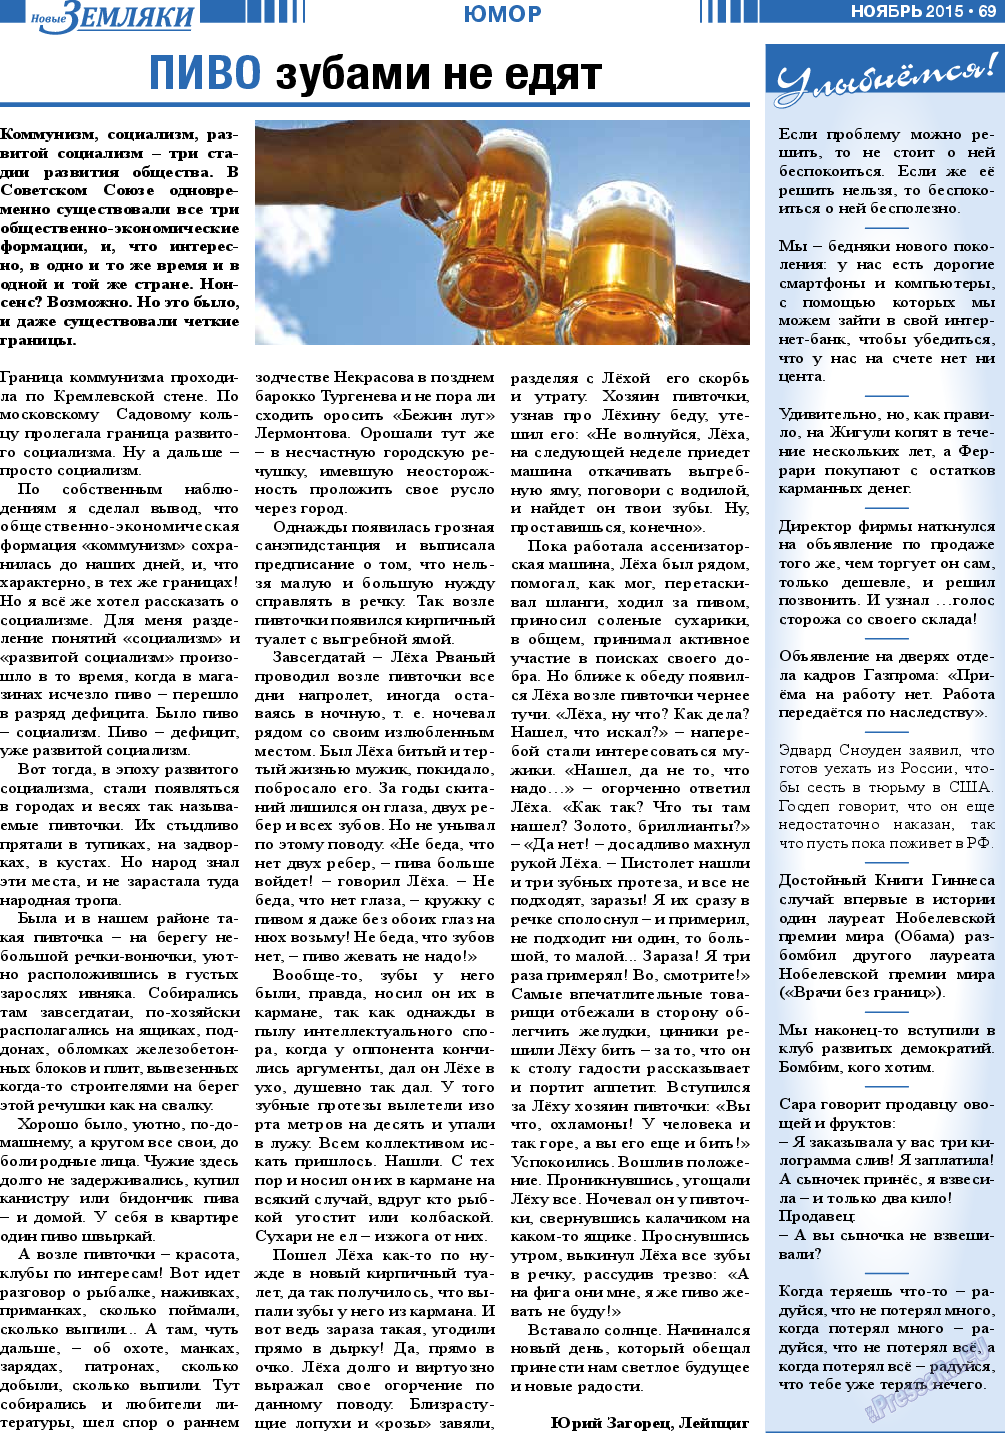 Новые Земляки, газета. 2015 №11 стр.69